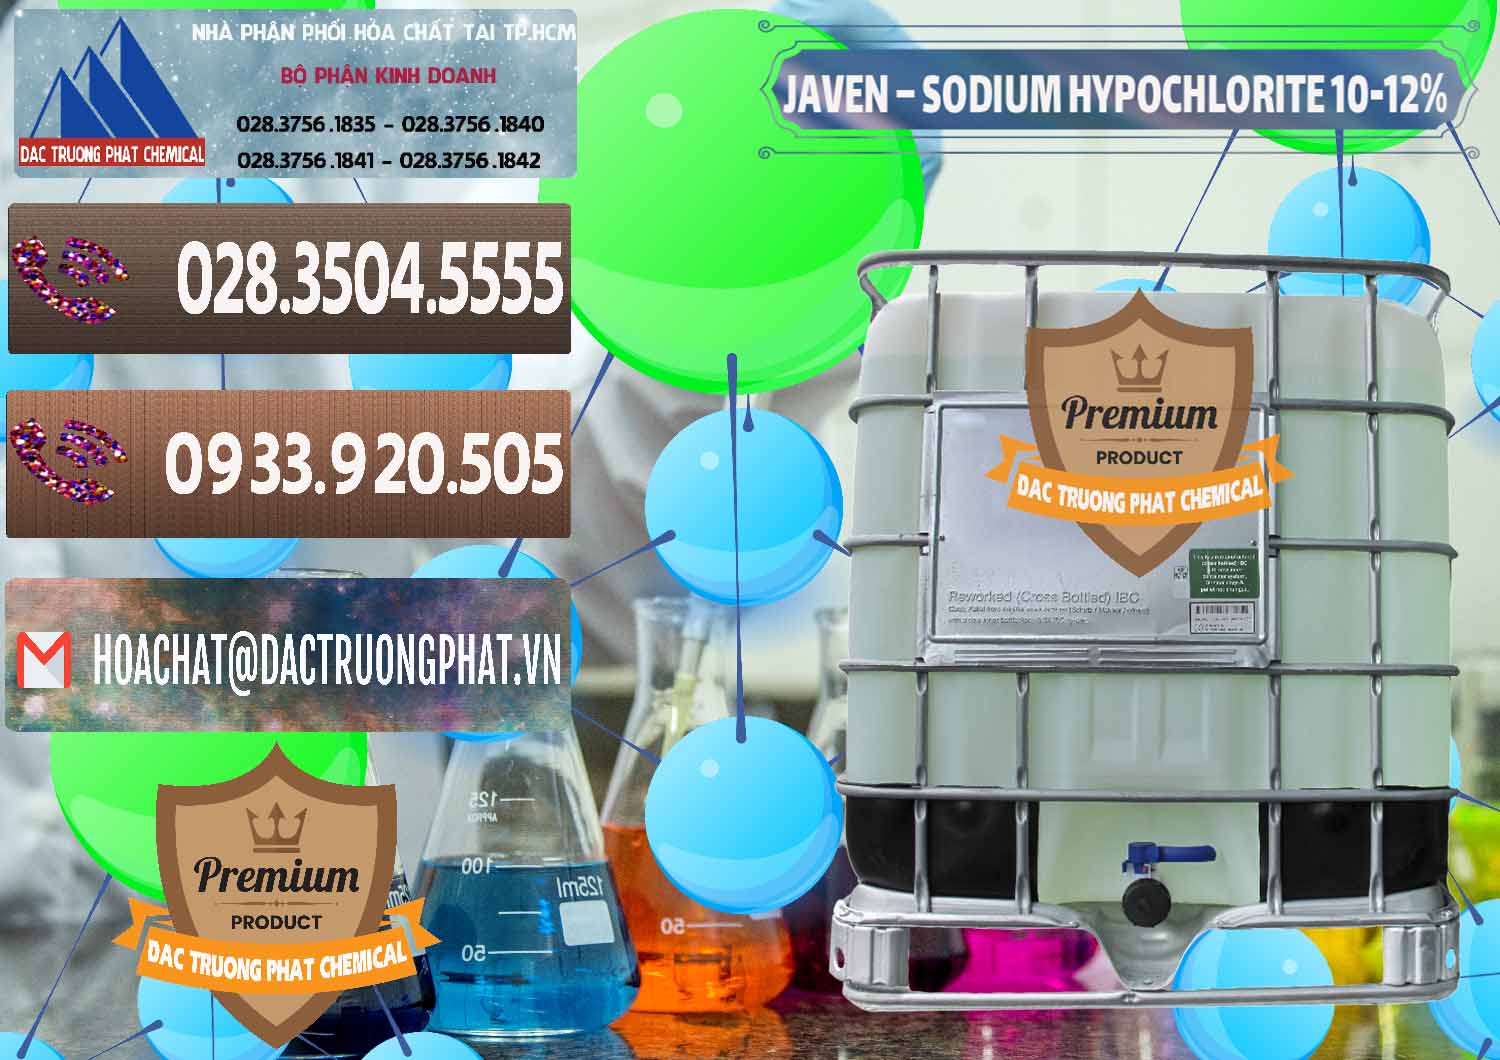 Chuyên phân phối - cung cấp Javen - Sodium Hypochlorite 10-12% Việt Nam - 0188 - Nhà phân phối - kinh doanh hóa chất tại TP.HCM - hoachatviet.net